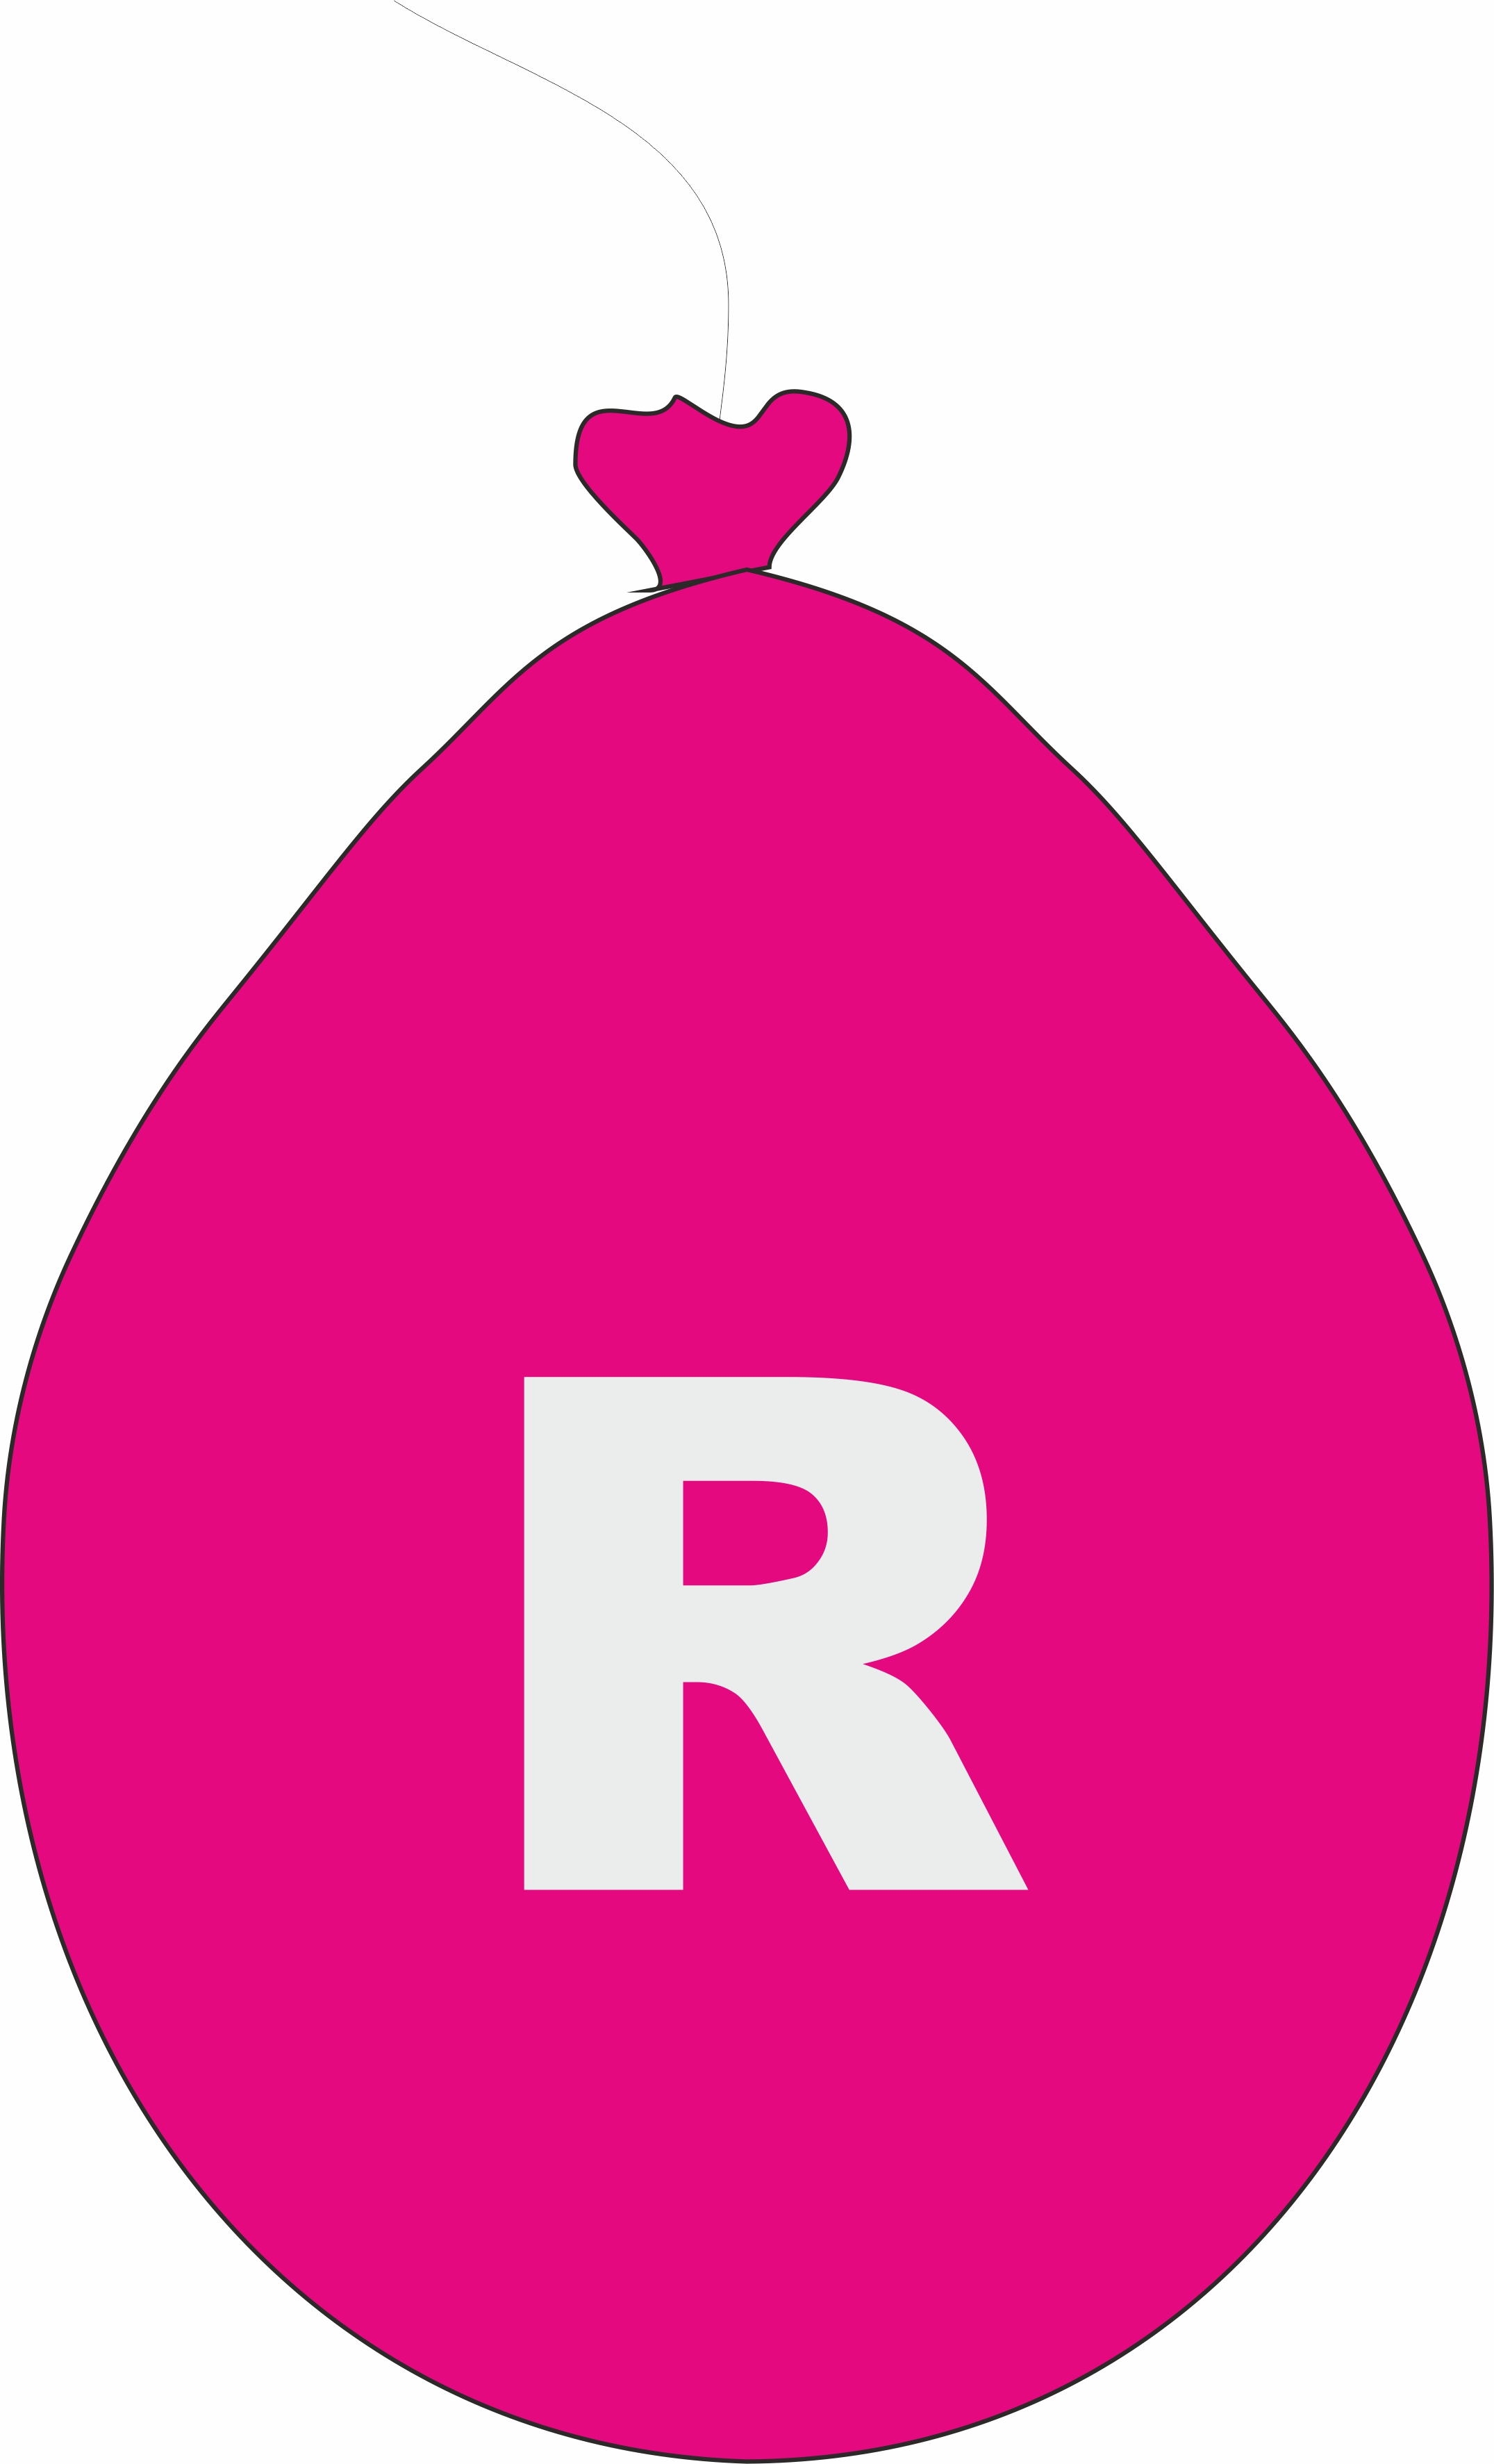 Balónek písmeno R růžové